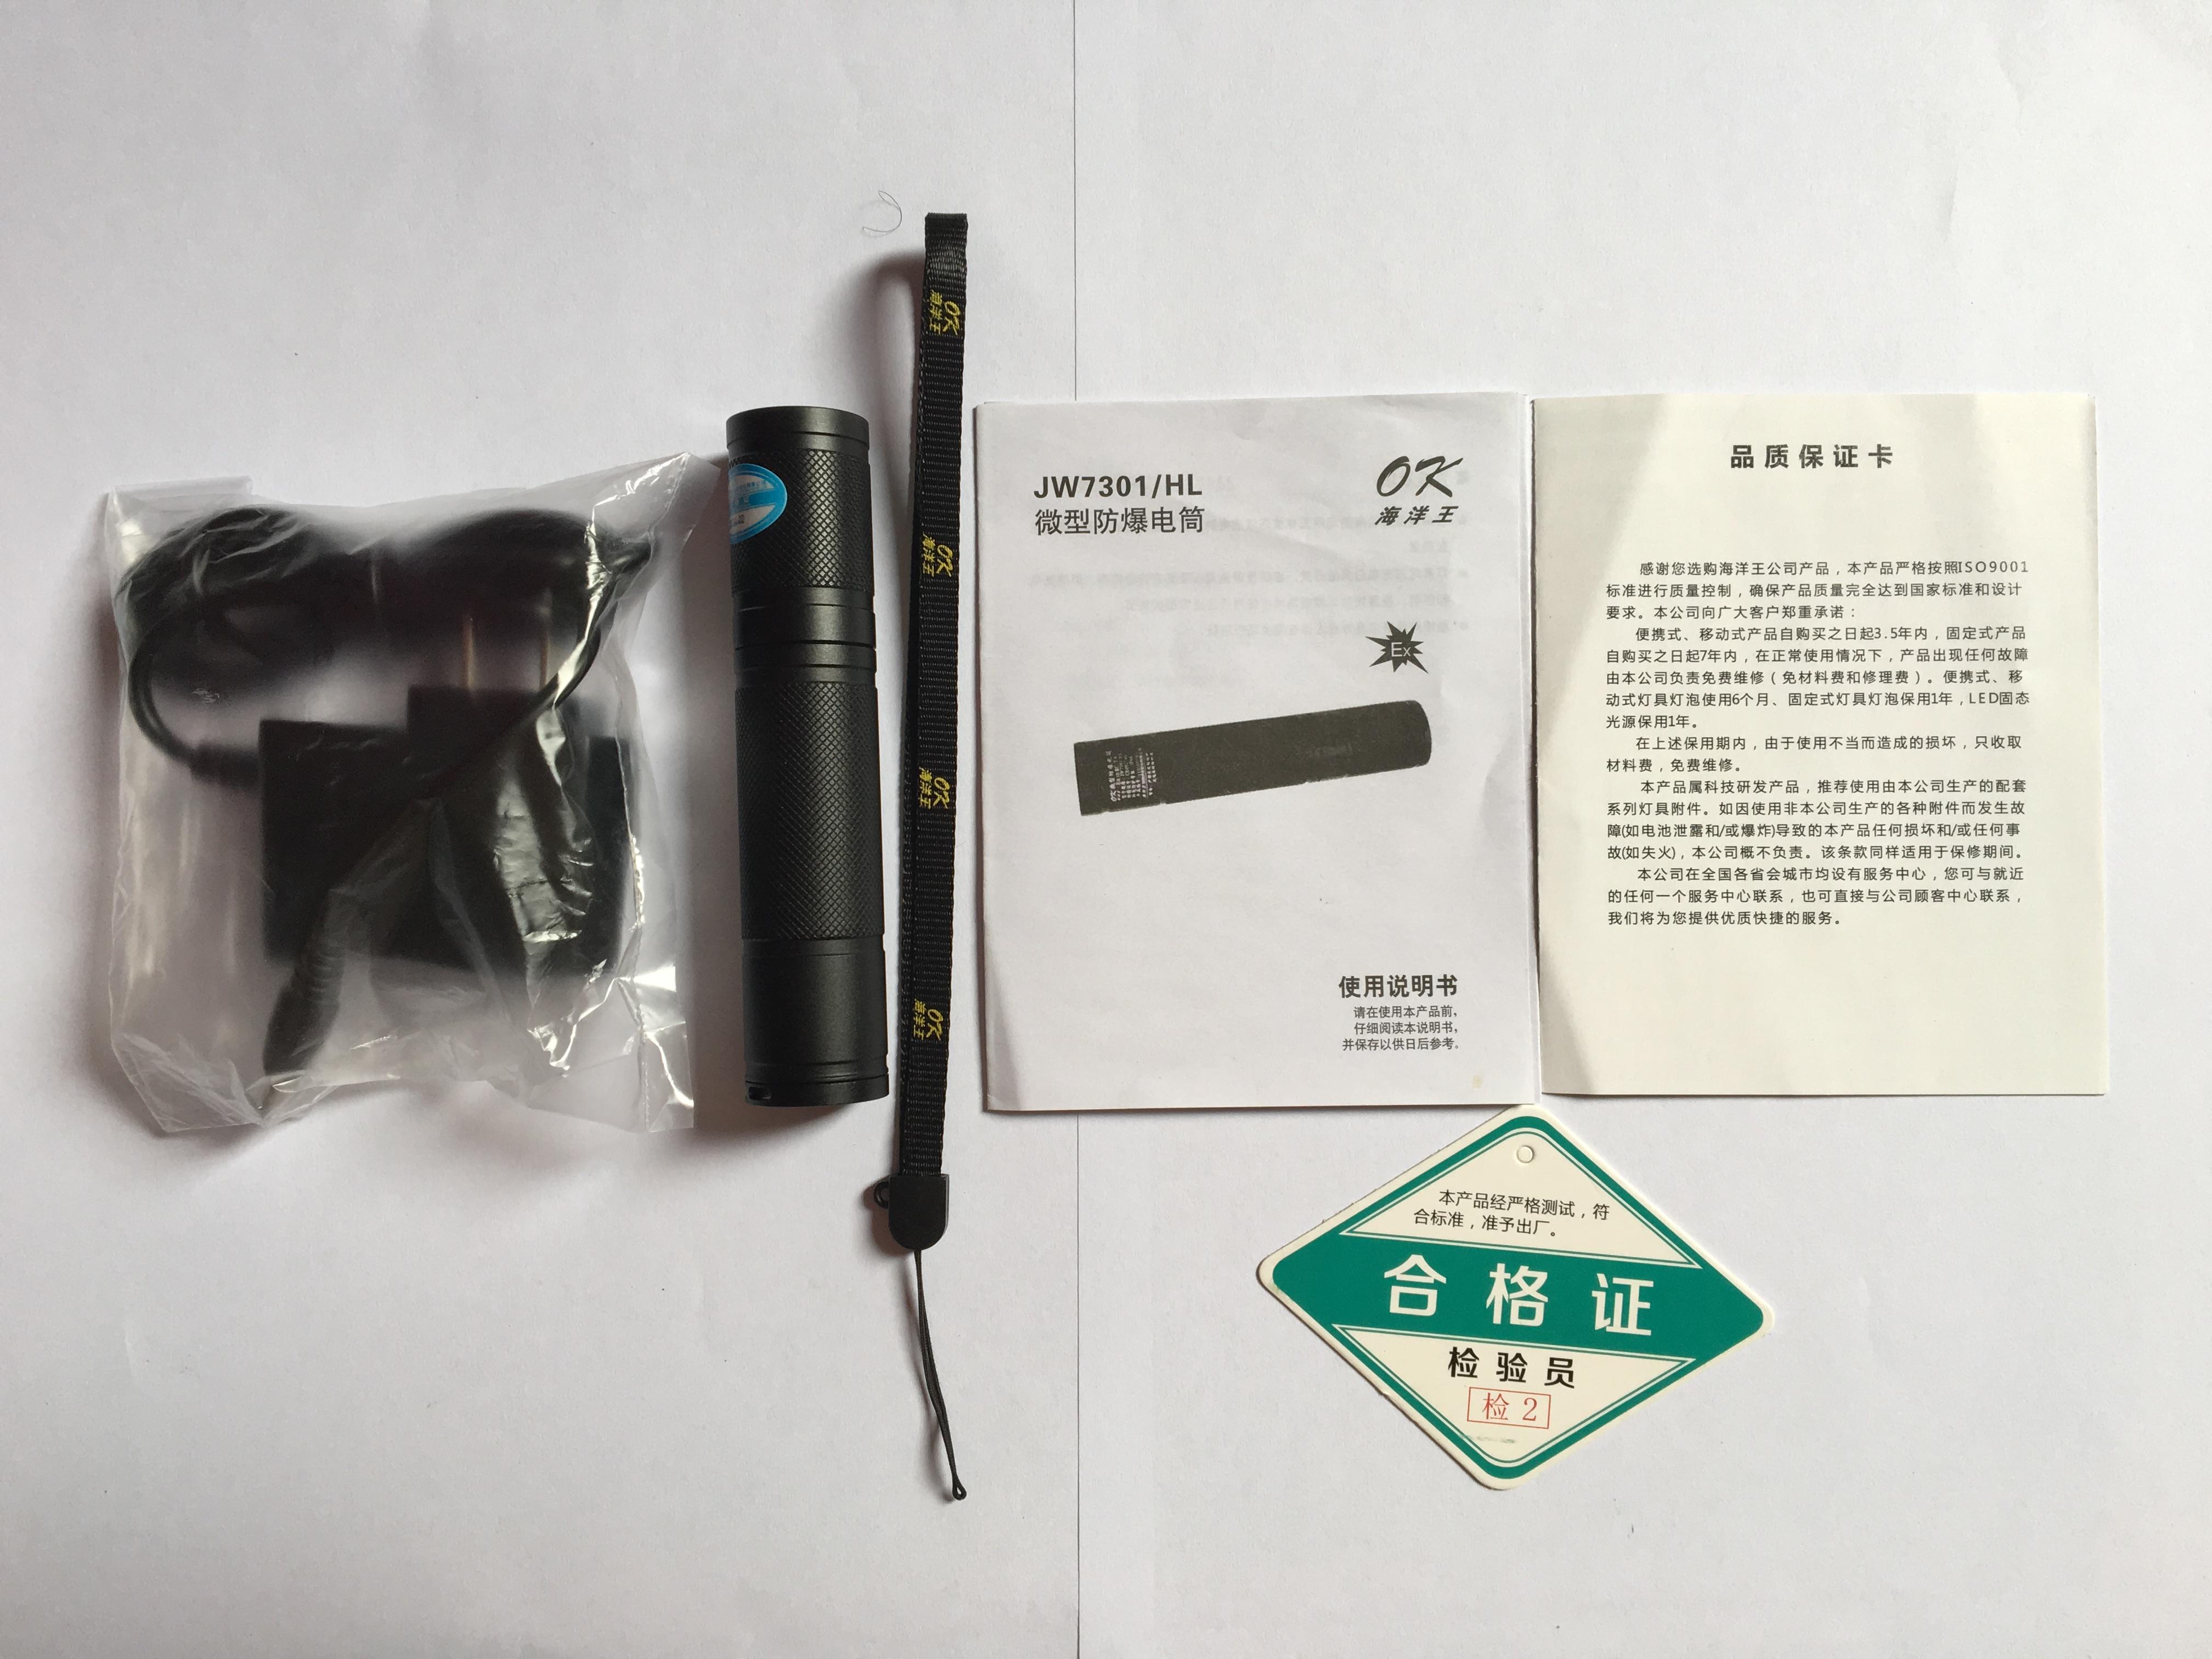 乐清海洋王JW7301/HL强光微型防爆手电筒价格